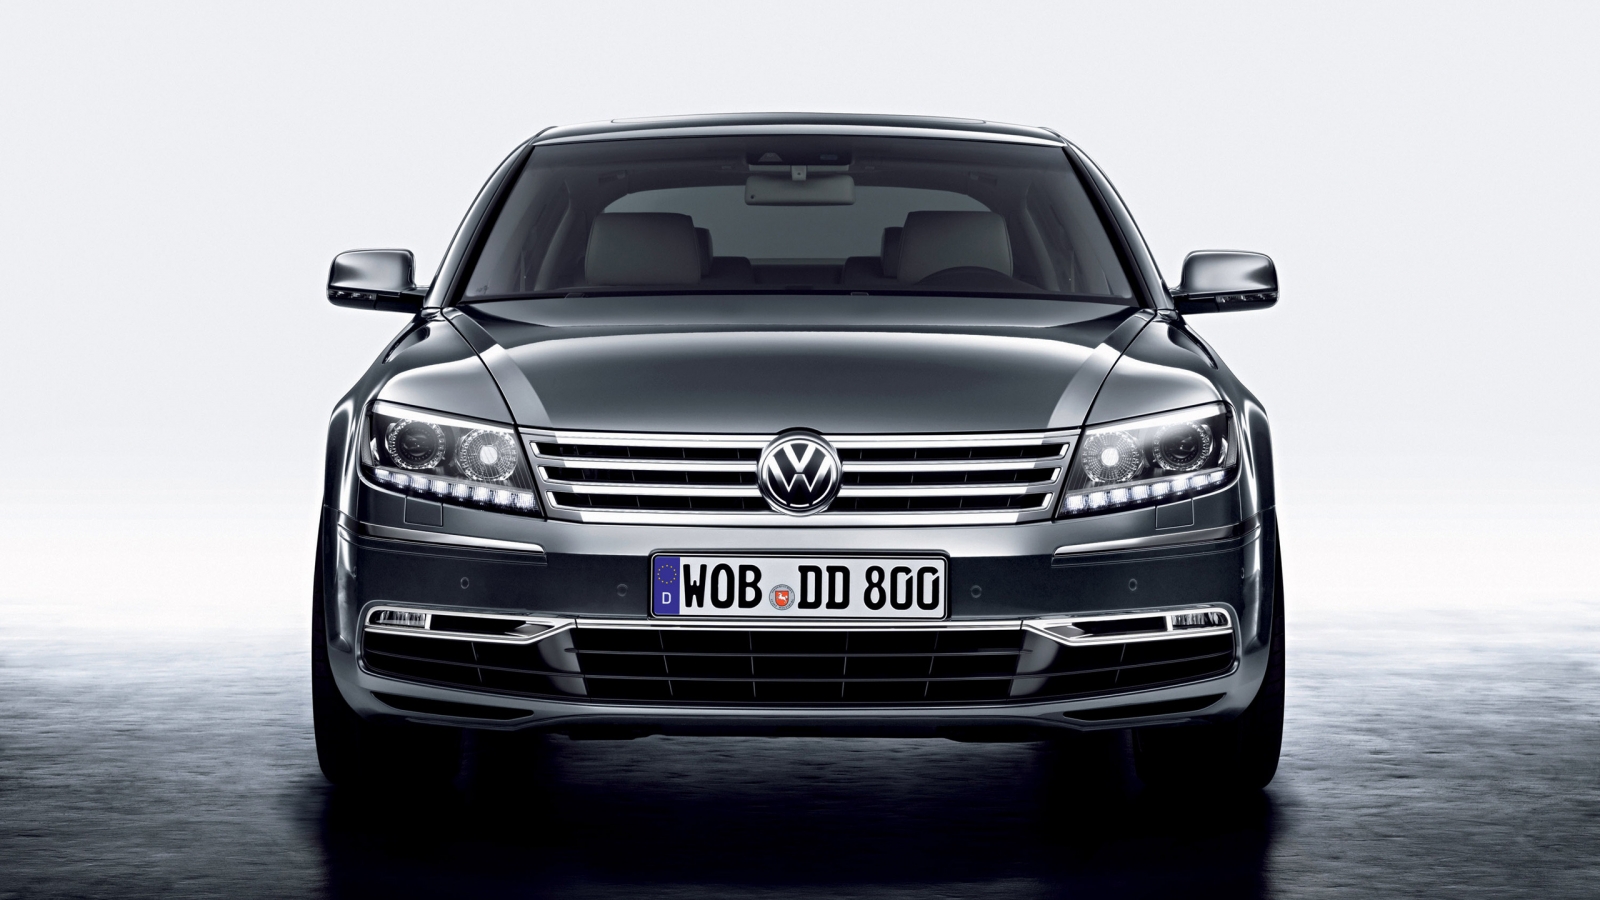 Volkswagen Phaeton Front for 1600 x 900 HDTV resolution